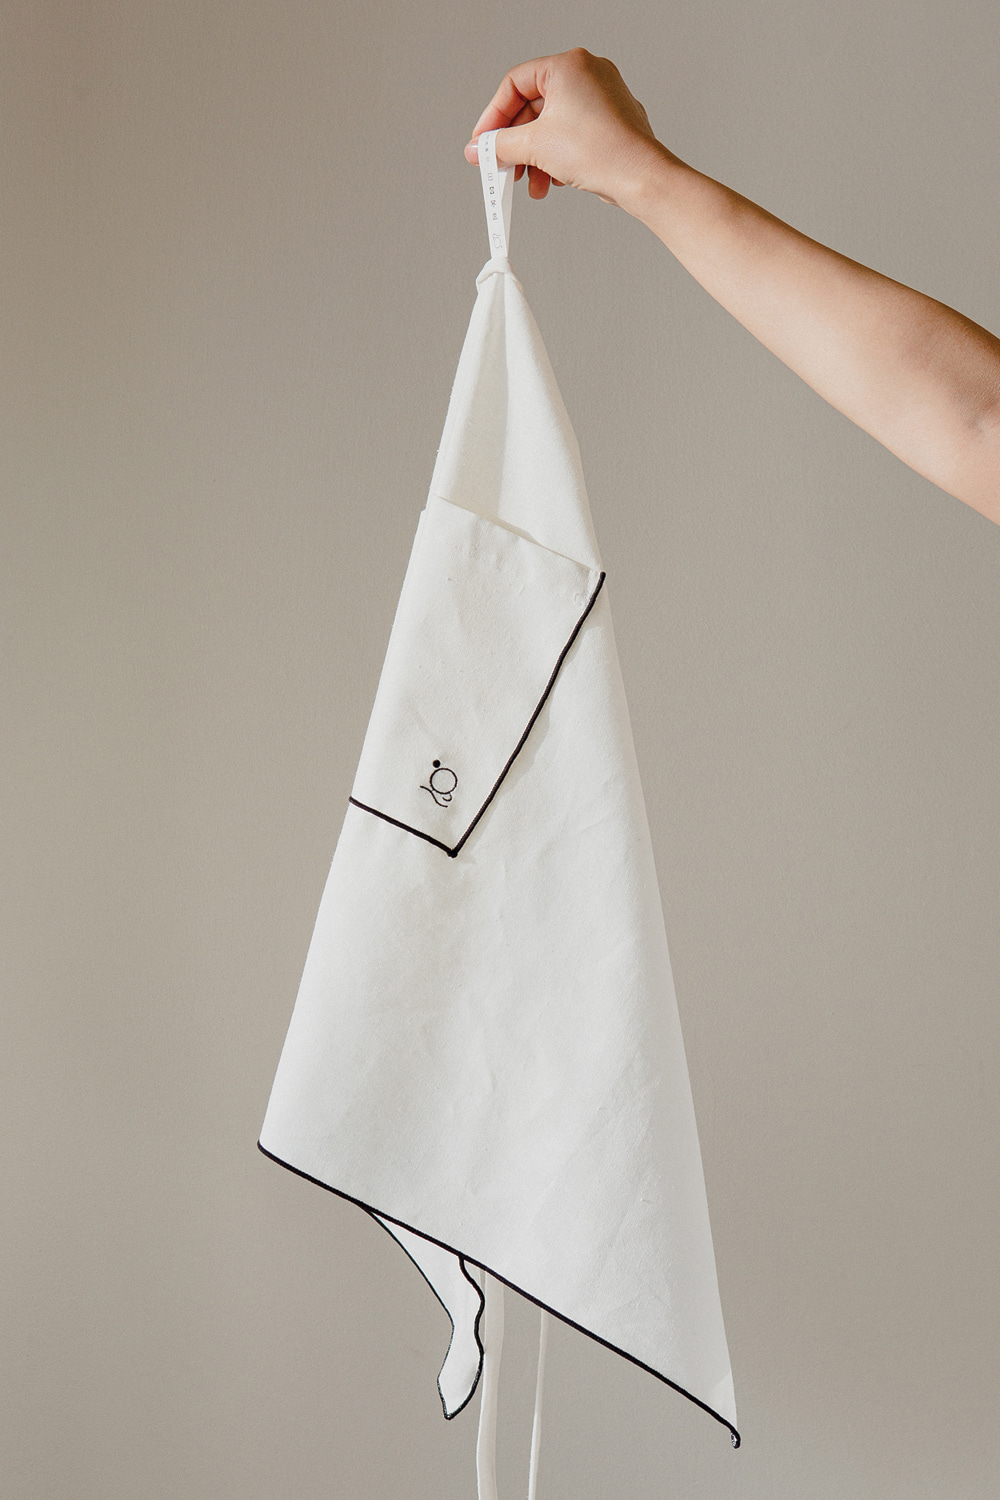 shihoil cloth. lined apron / black 시호일, 자체제작세라믹브랜드